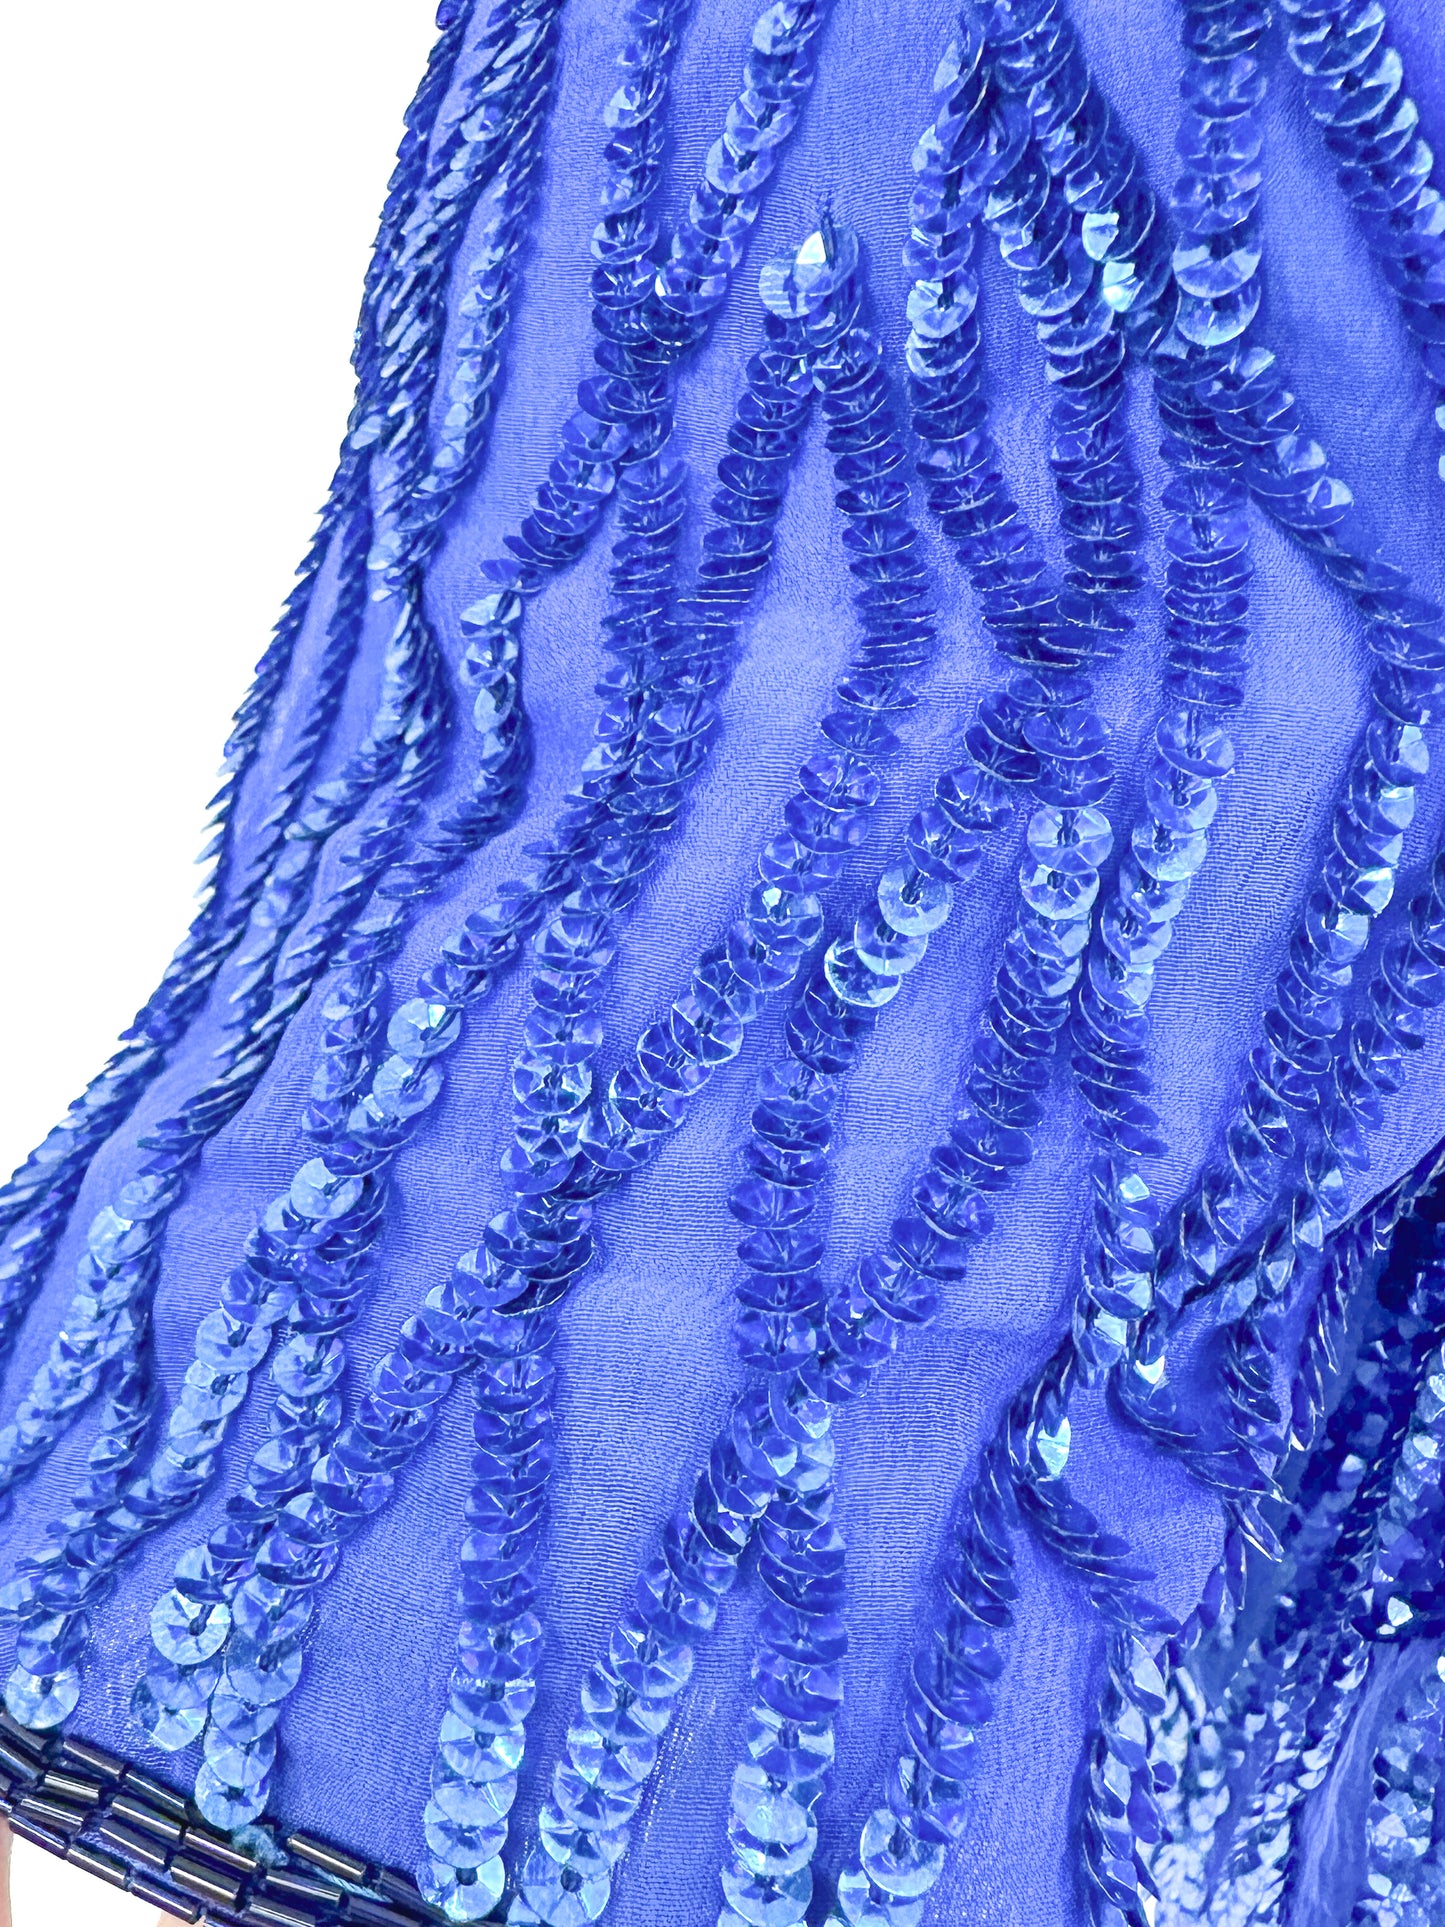 1980s Electric Blue Sequin Dress / Waist 28